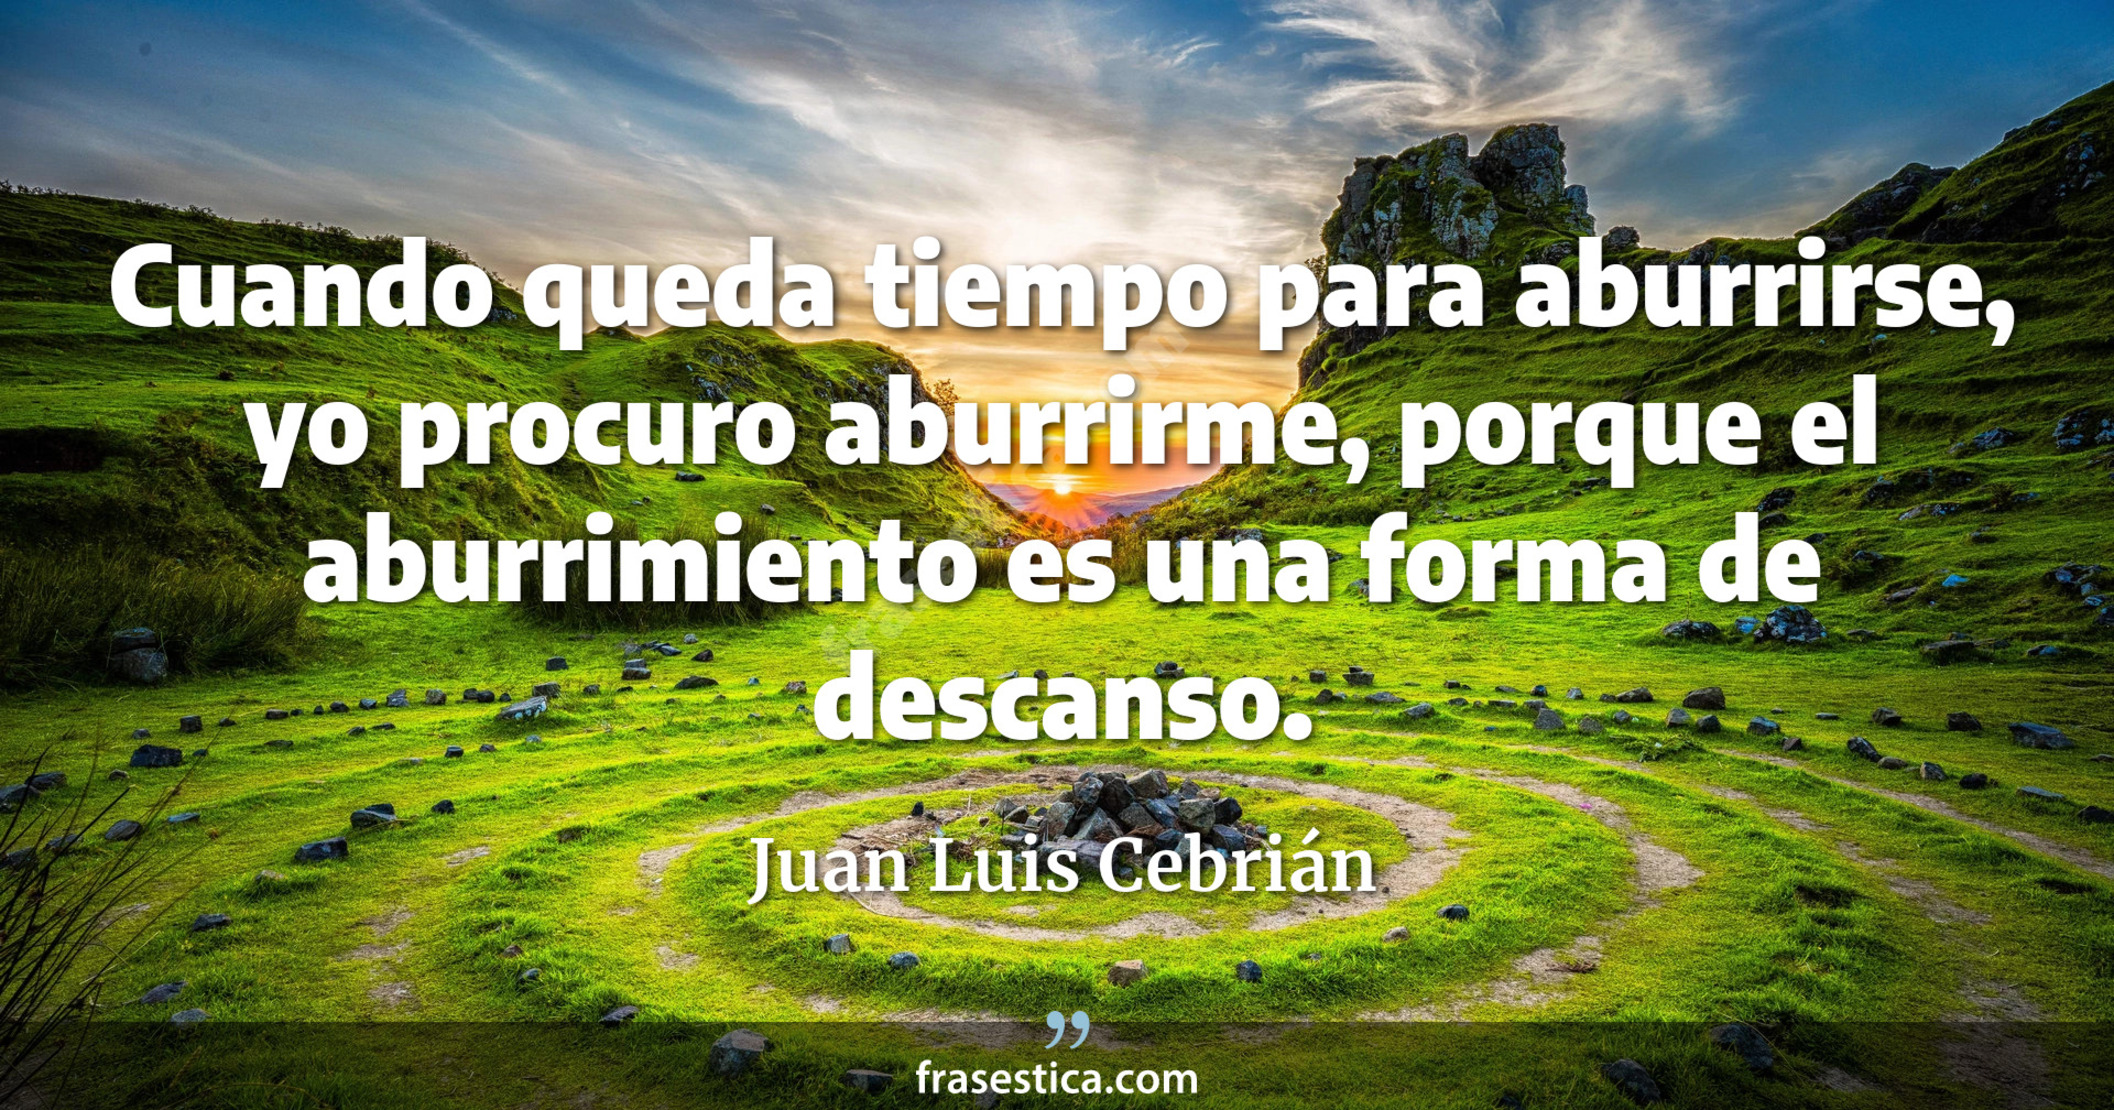 Cuando queda tiempo para aburrirse, yo procuro aburrirme, porque el aburrimiento es una forma de descanso. - Juan Luis Cebrián